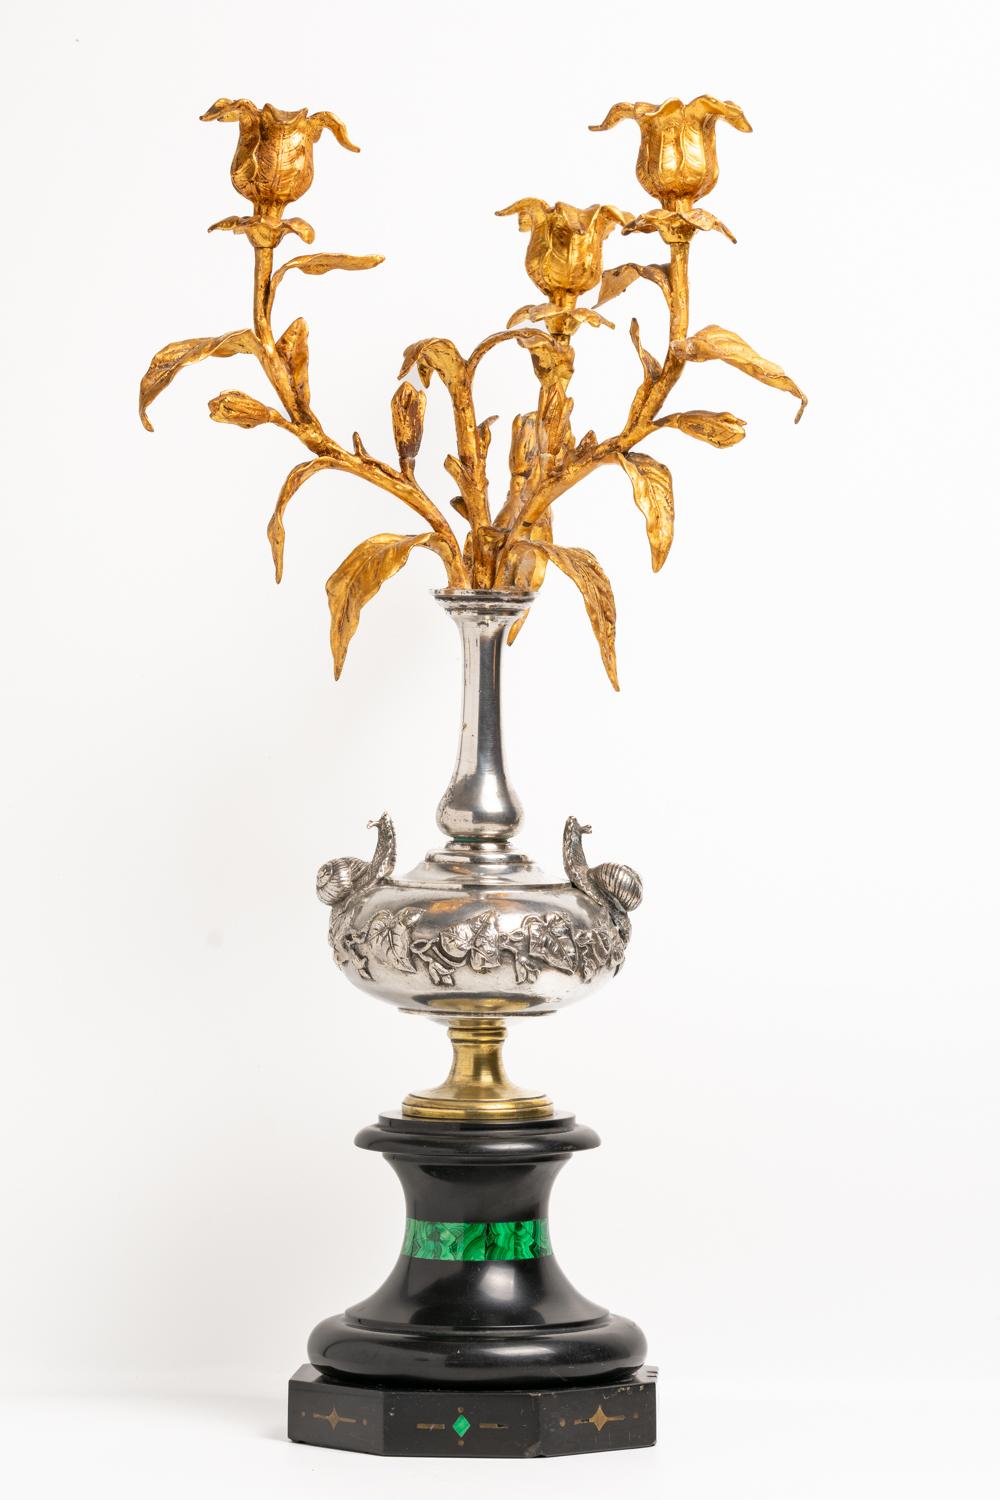 Ce candélabre français du début du XIXe siècle est une œuvre d'art magistrale. La pièce est coulée en marbre noir et en bronze doré. L'exceptionnel motif plaqué argent est décoré d'une paire d'escargots et de lierre reposant sur un lourd socle